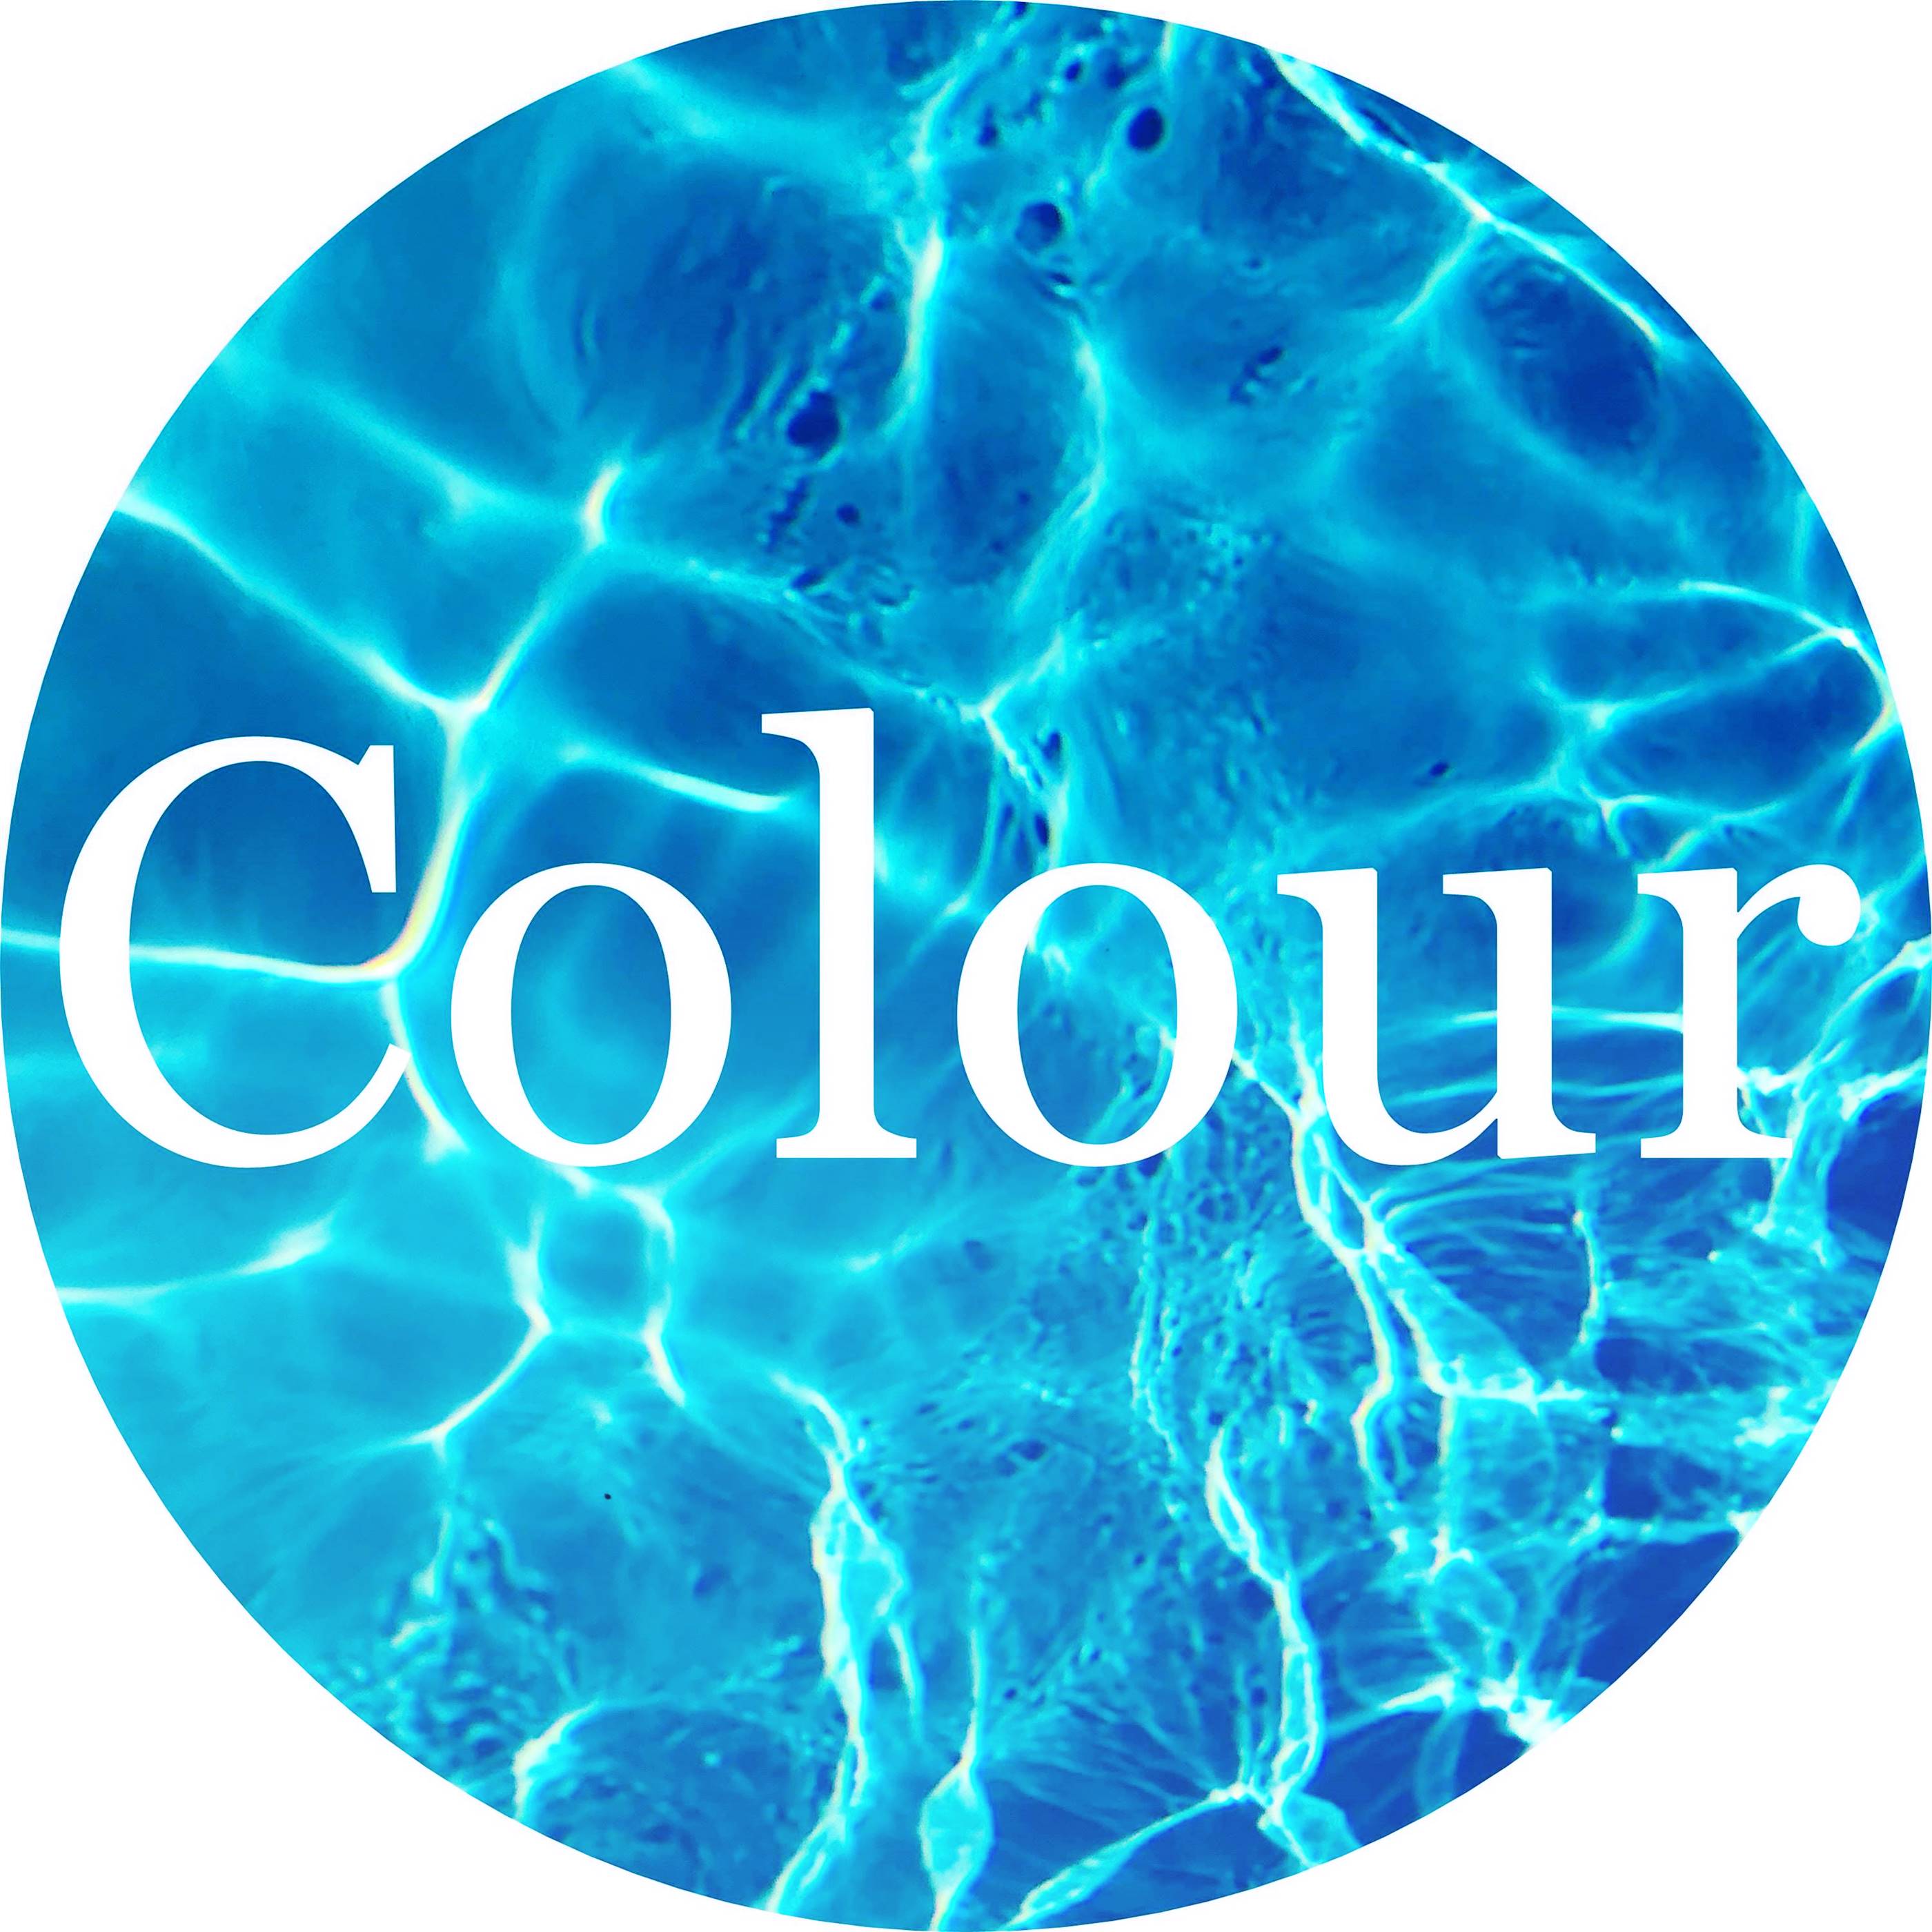 Colour of Liquid